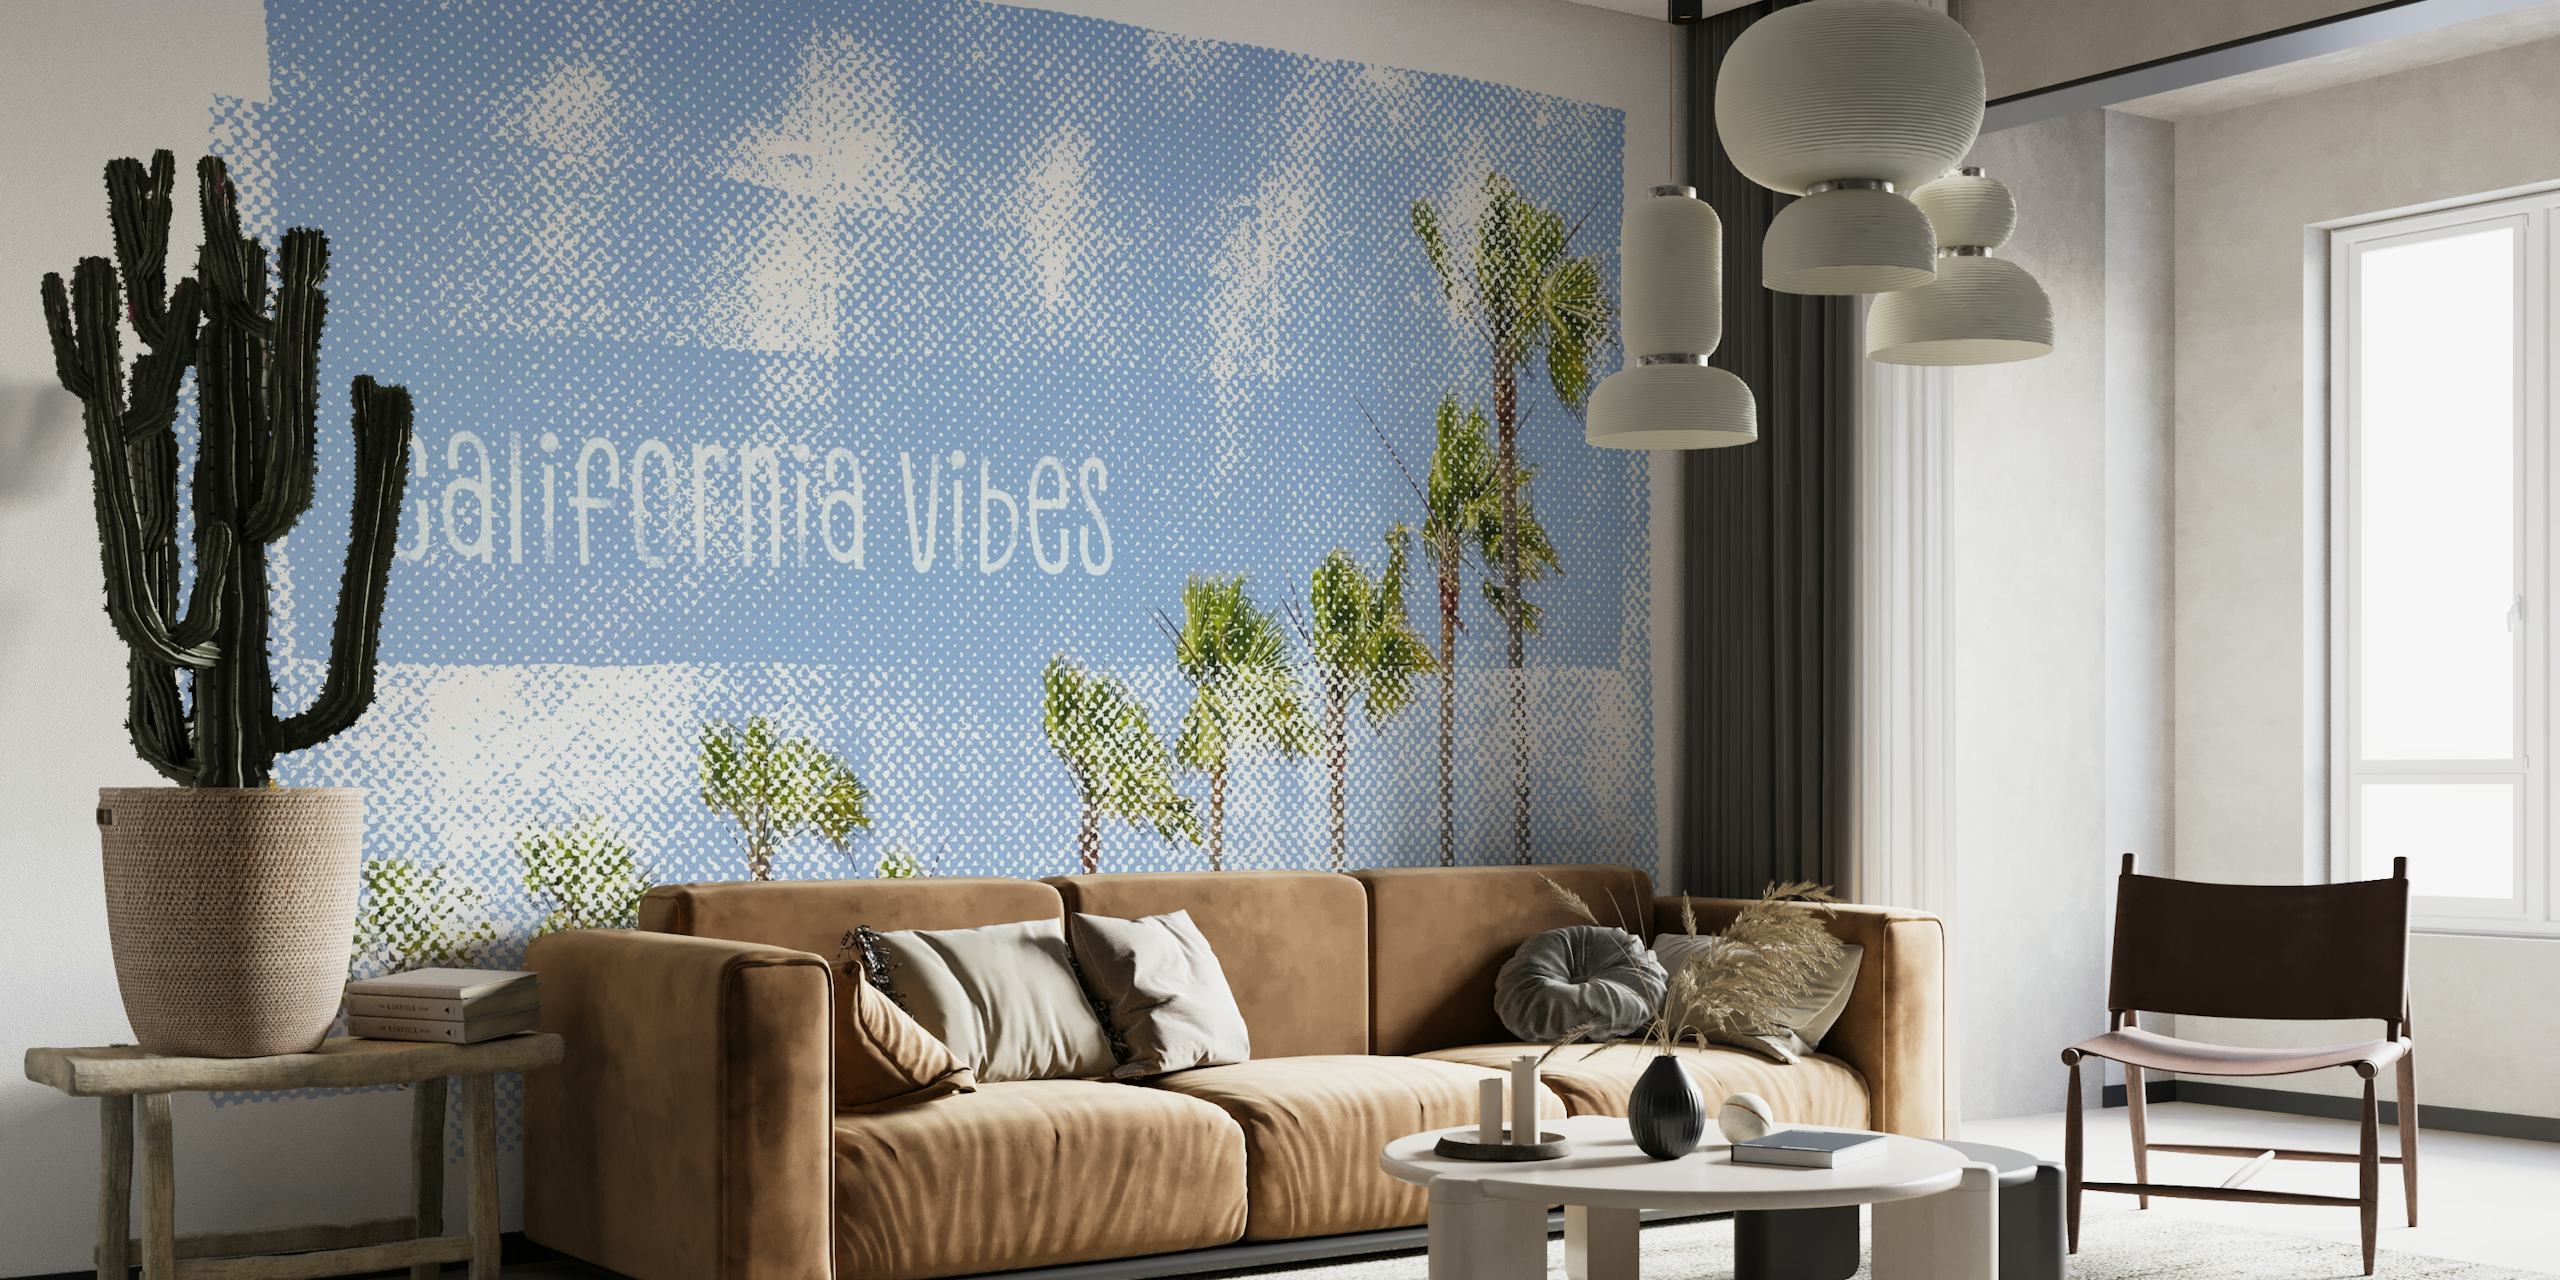 Kunstnerisk californisk palmetræ vægmaleri med abstrakt blå tekstur